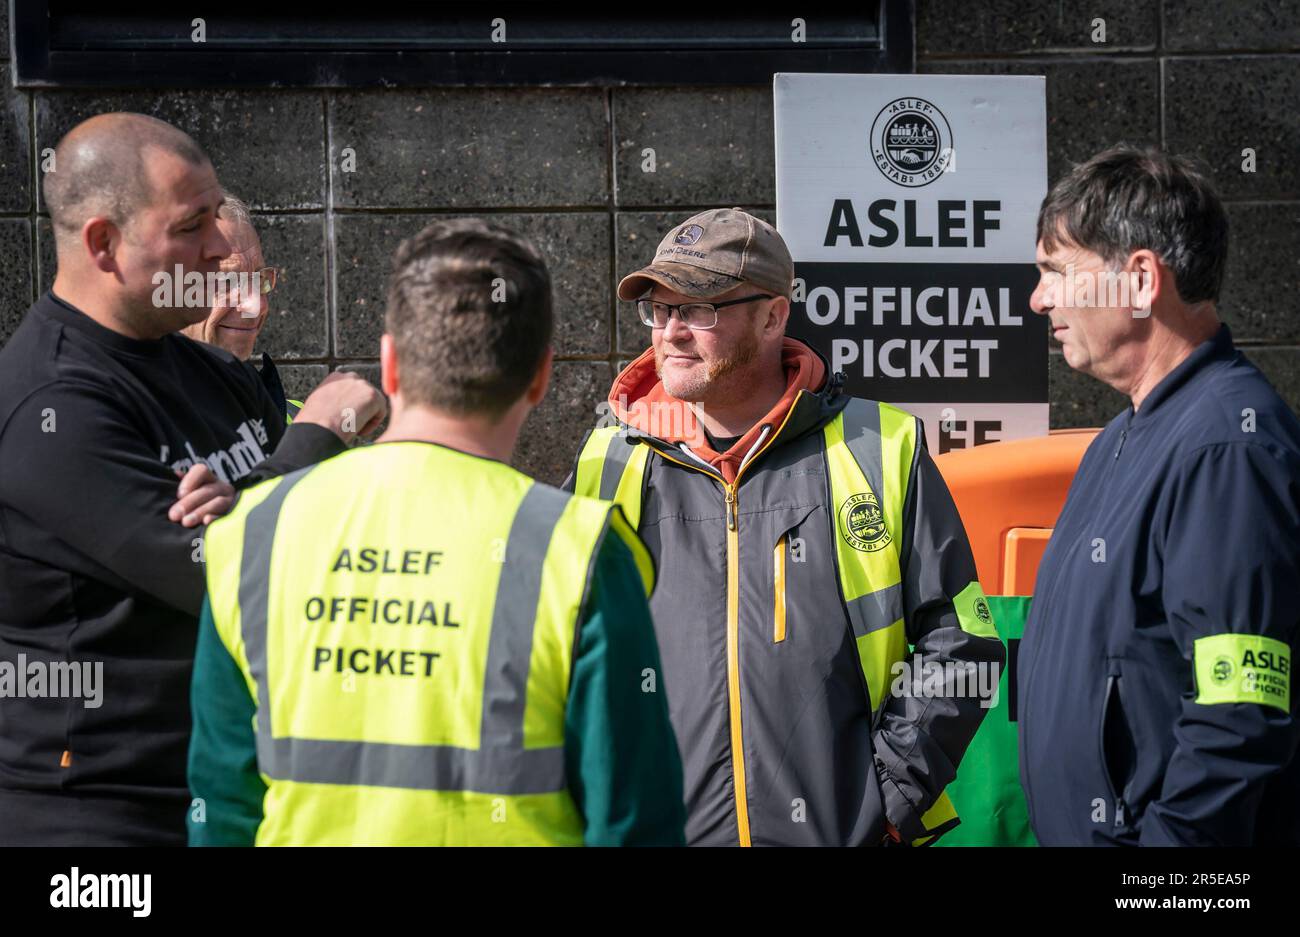 Membri del sindacato di Aslef su una linea del picket vicino alla stazione ferroviaria di Leeds, mentre i membri del sindacato di Aslef escono nella disputa lunga sulla retribuzione e sulle condizioni. Data immagine: Sabato 3 giugno 2023. Foto Stock